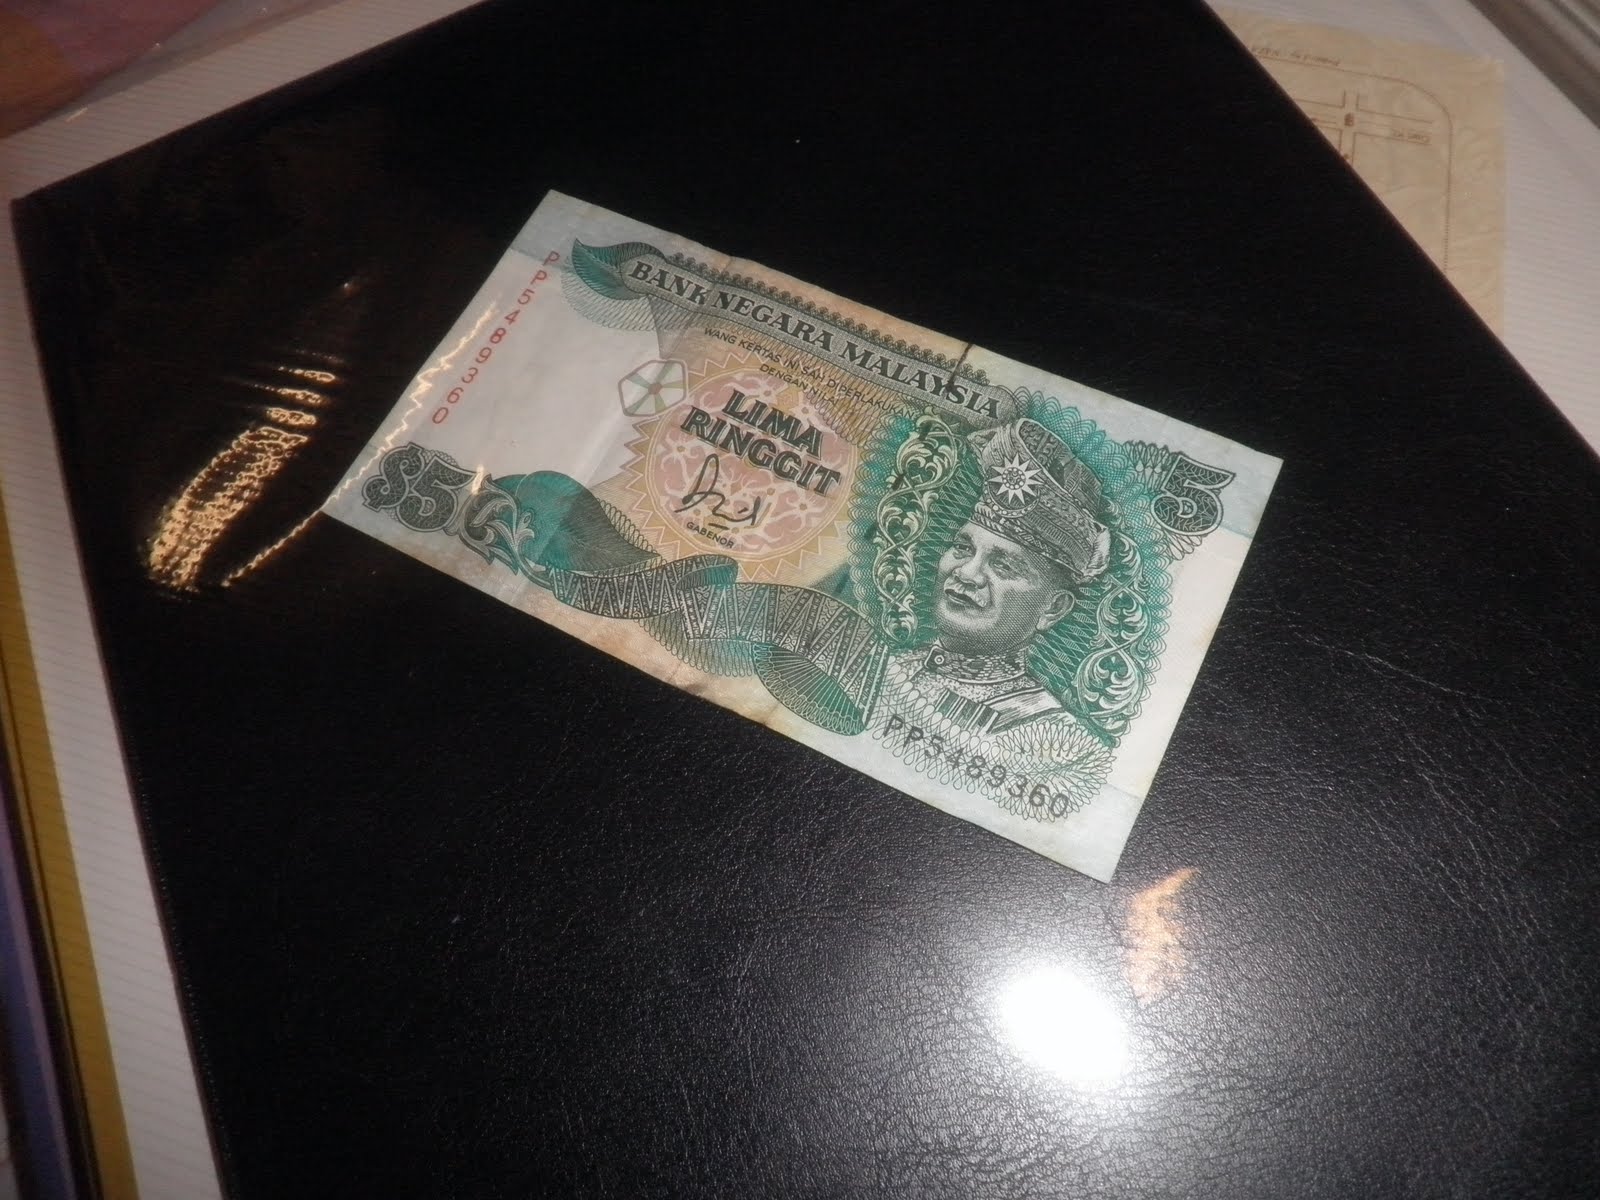 koleksi jual beli duit lama: DUIT KERTAS LAMA RM5